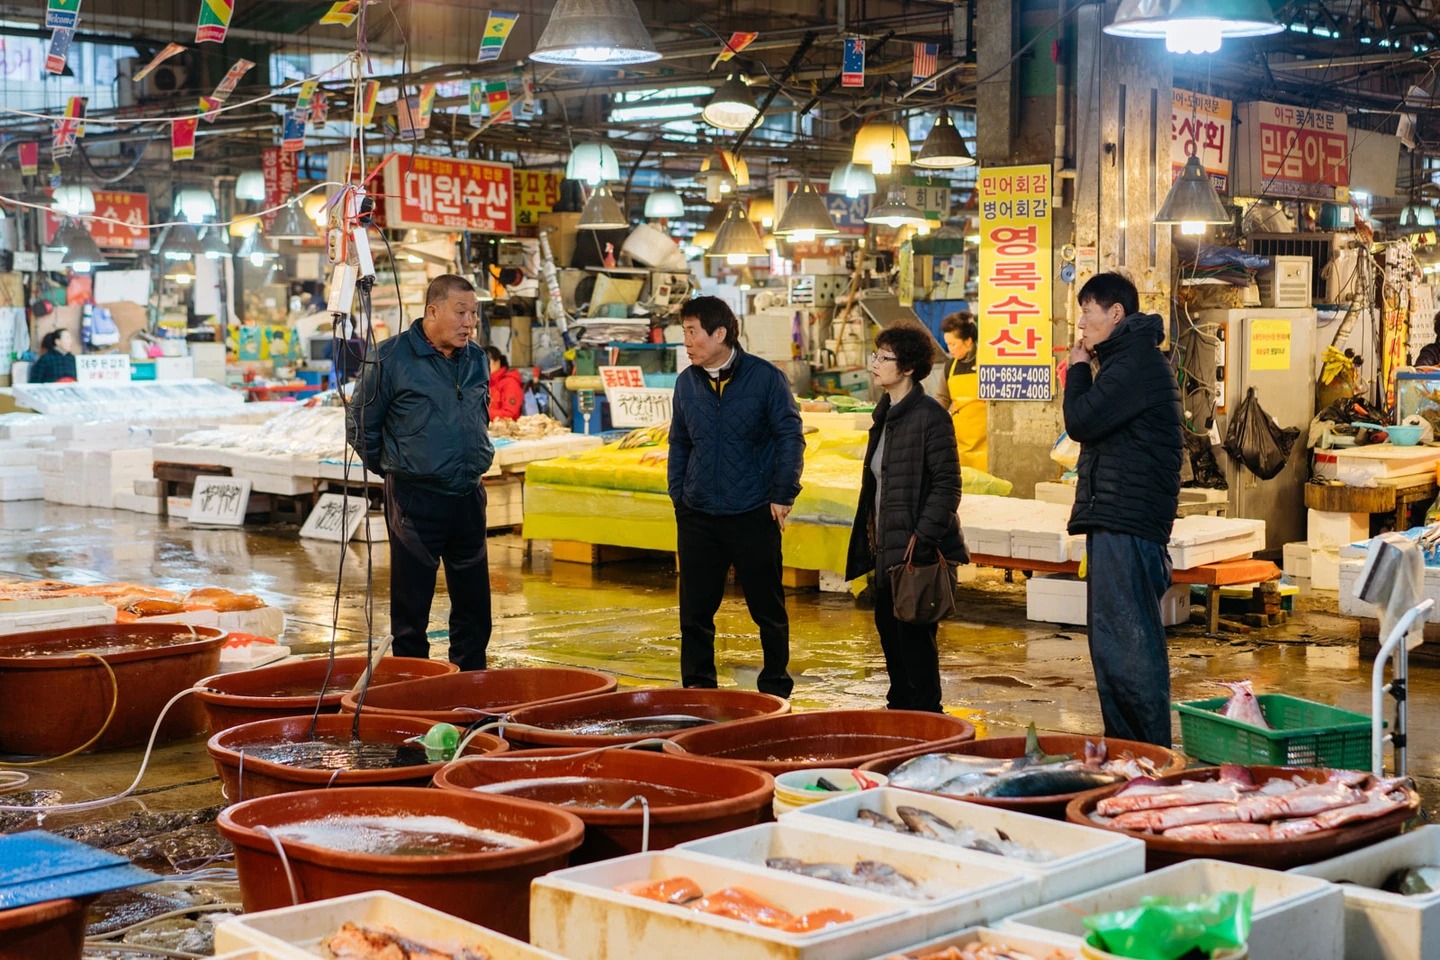 Cô gái Việt kể chuyện đi chợ hải sản tươi sống nổi tiếng Hàn Quốc: Có thể ăn ngay tại chợ luôn, 4 triệu đồng một bữa không gọi là đắt - Ảnh 6.